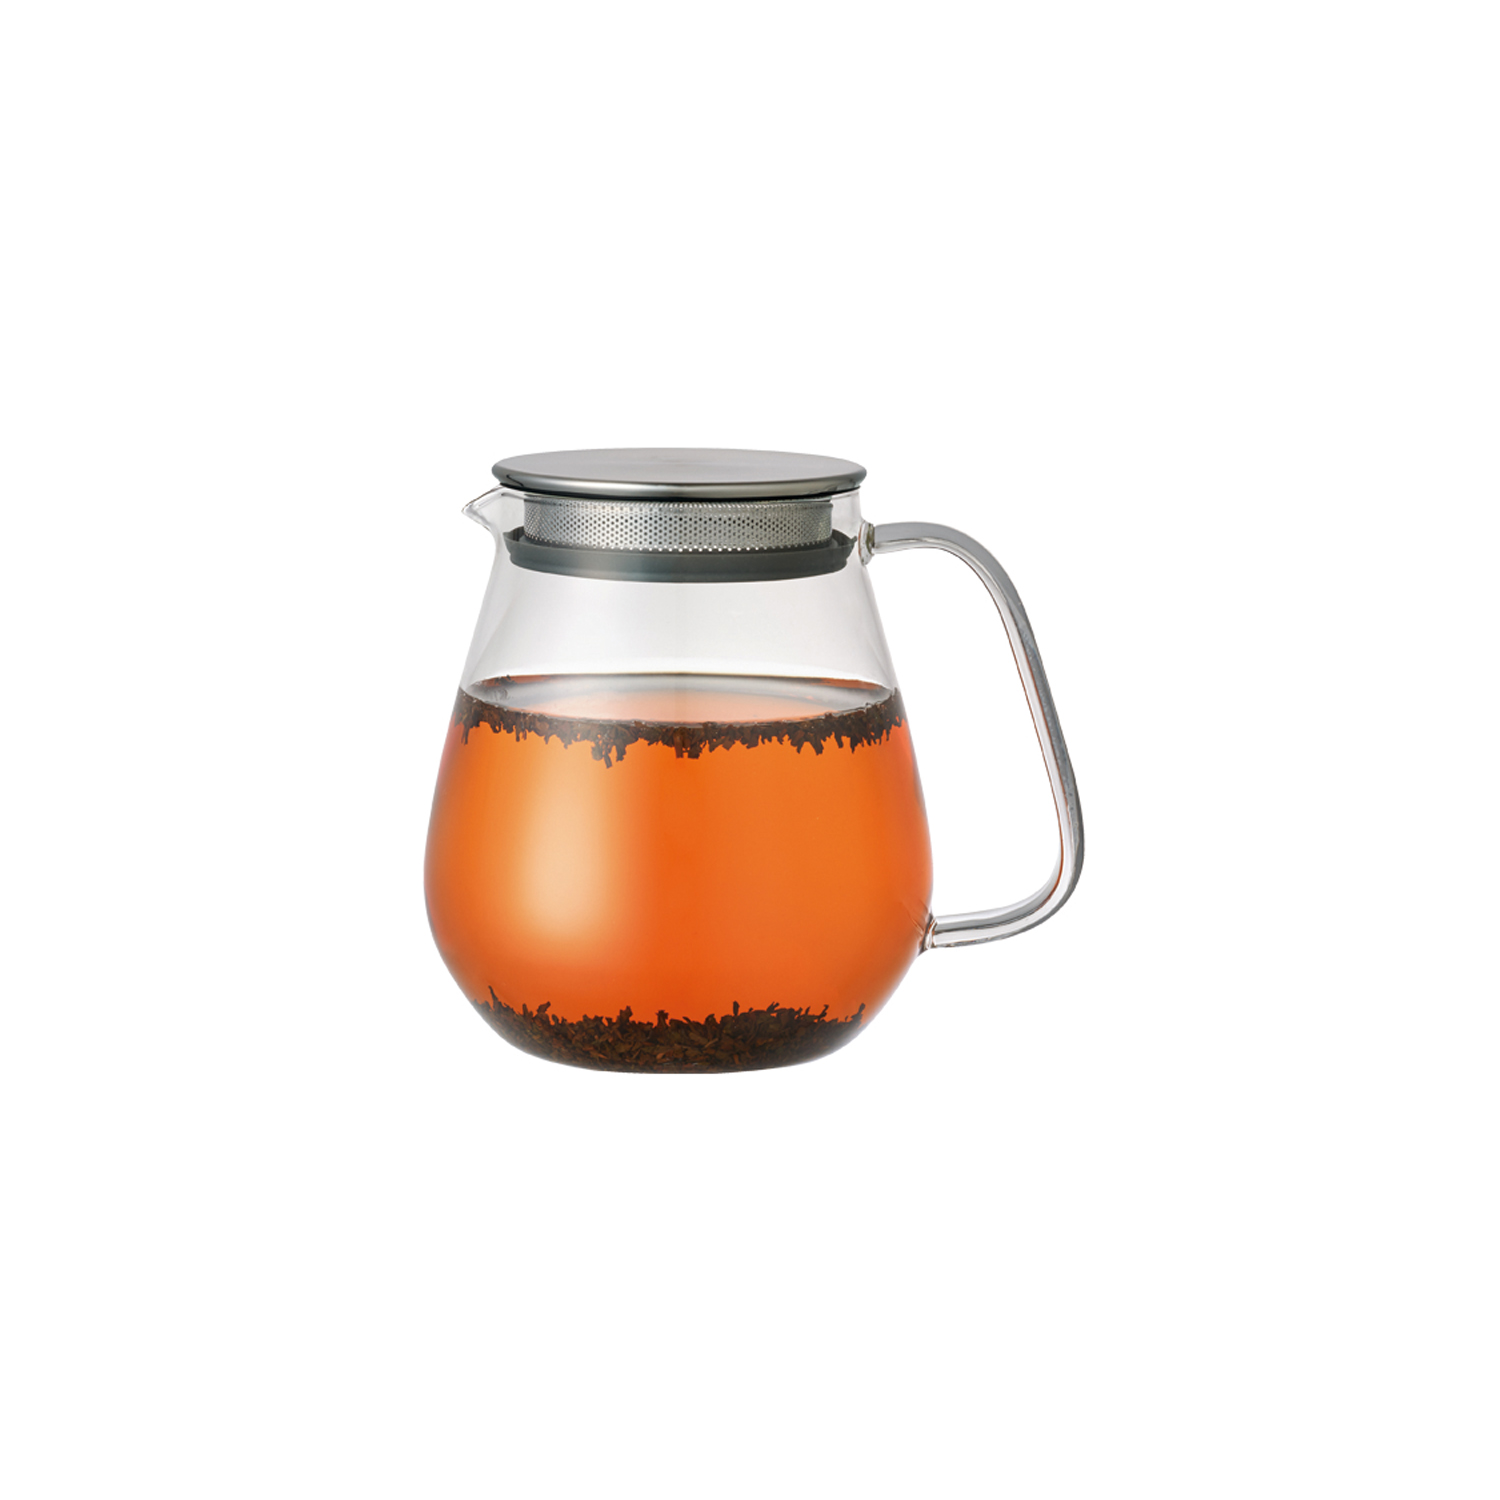 Kinto Unitea One Touch Teapot 720ml